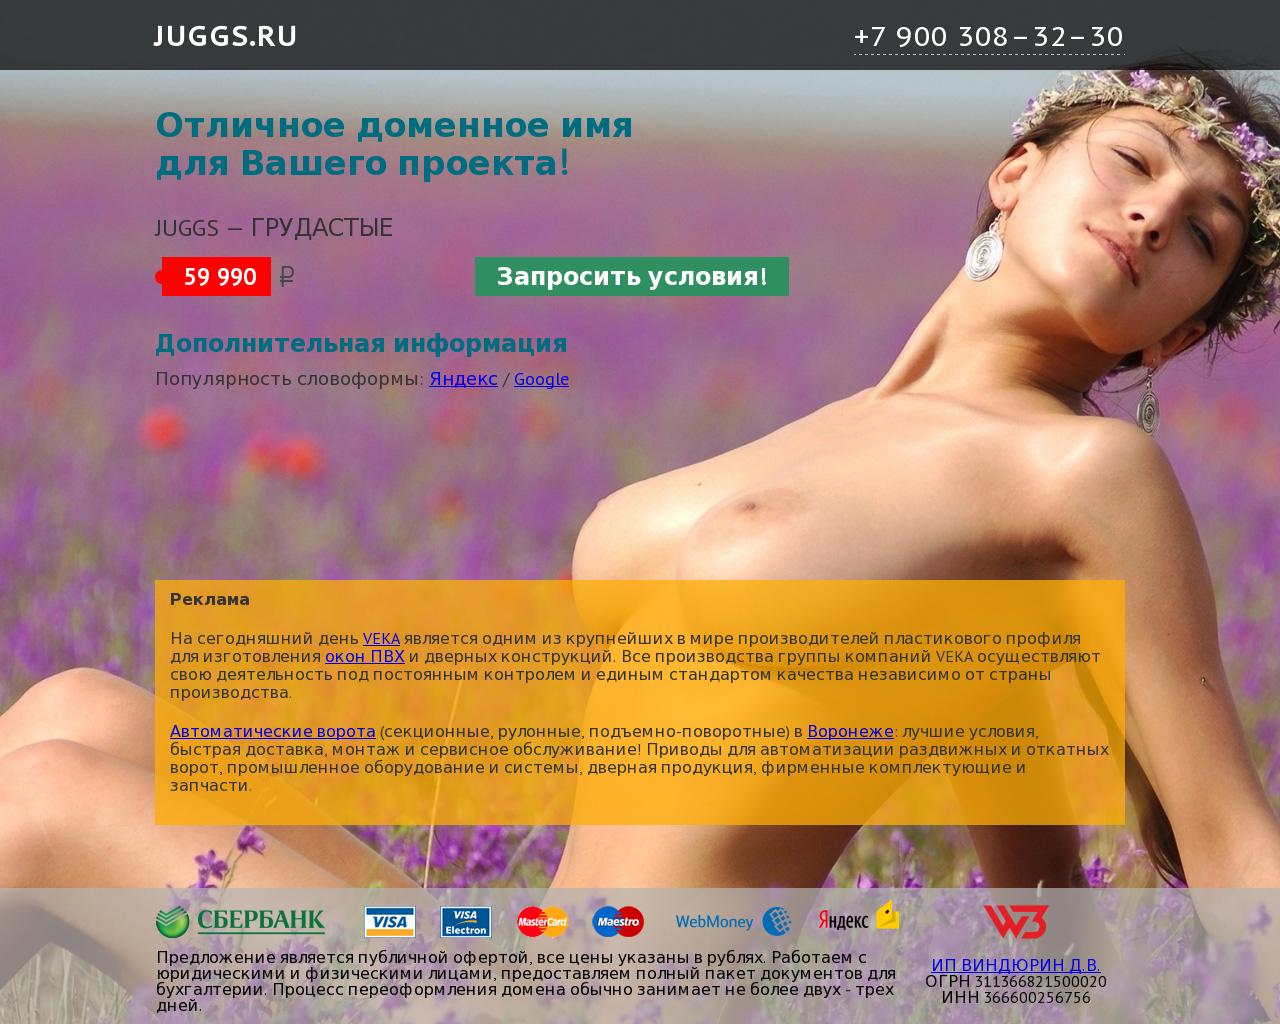 Изображение сайта juggs.ru в разрешении 1280x1024